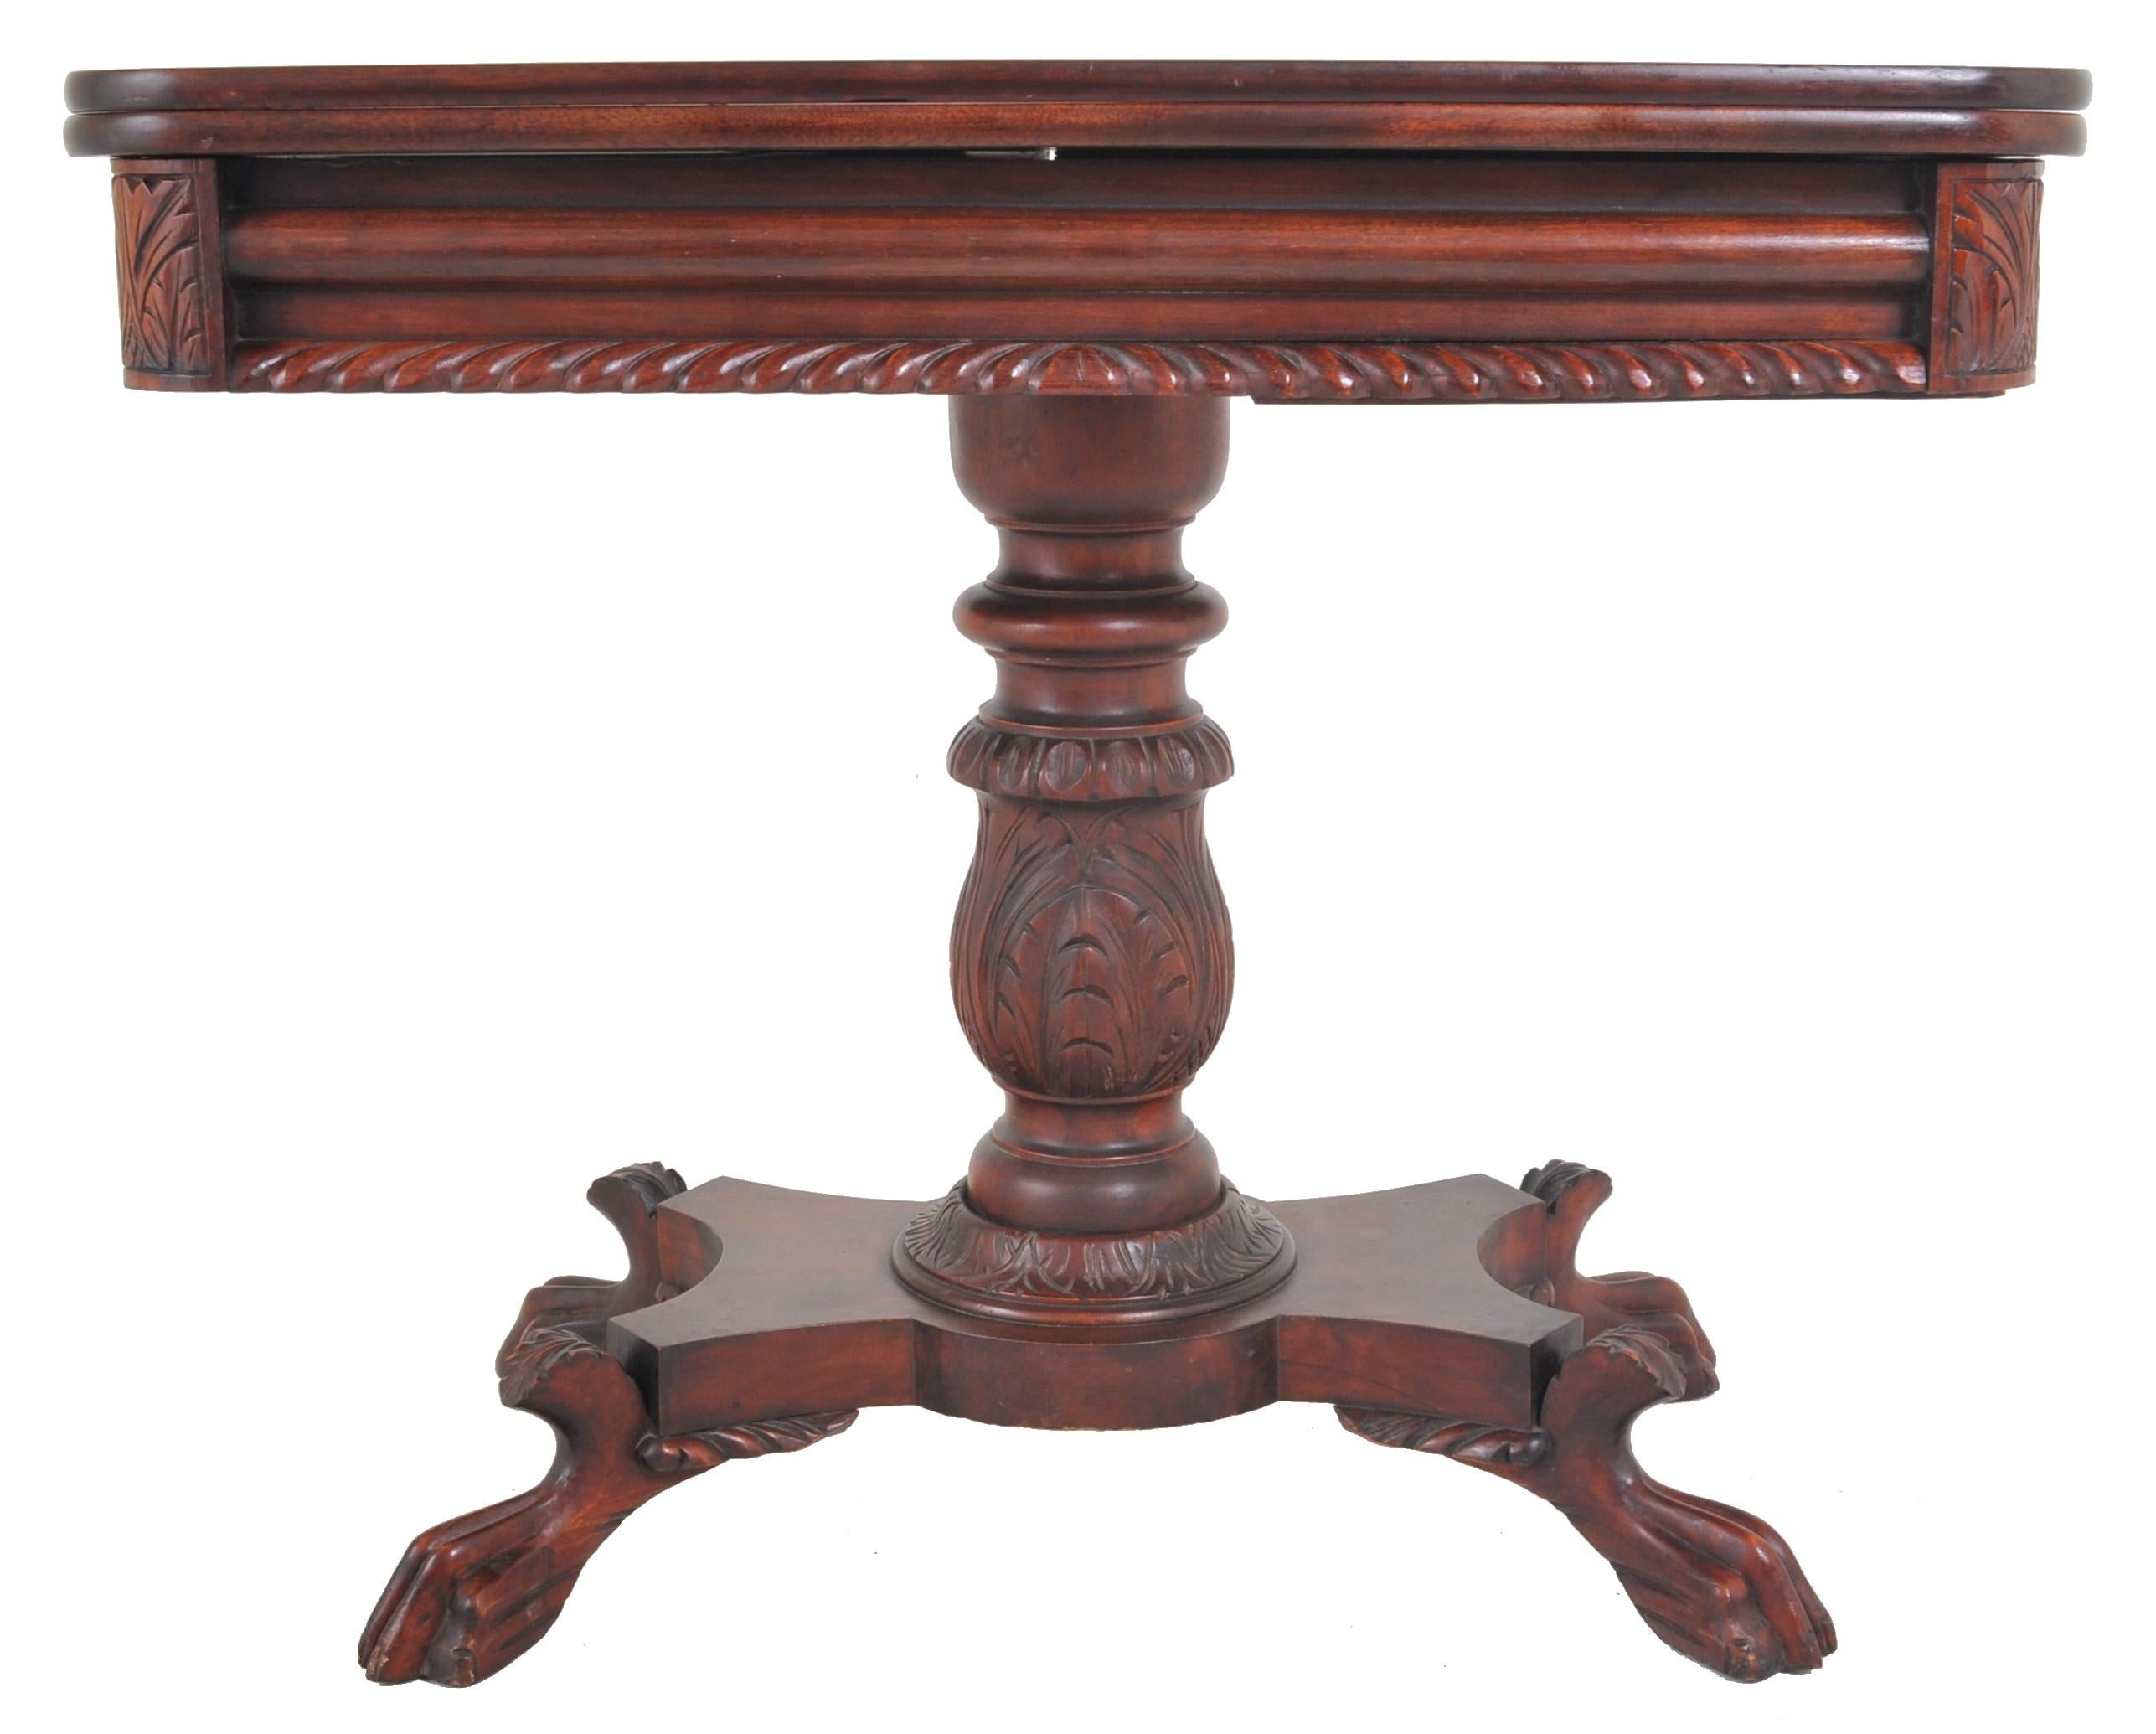 Amerikanischer spätföderalistischer/kaiserzeitlicher Mahagoni-Tisch mit aufklappbarem Tisch, um 1830. Der Tisch hat eine klappbare und drehbare Platte, darunter ist ein geschnitzter und gadronierter Sockel. Der Tisch steht auf einem gedrechselten